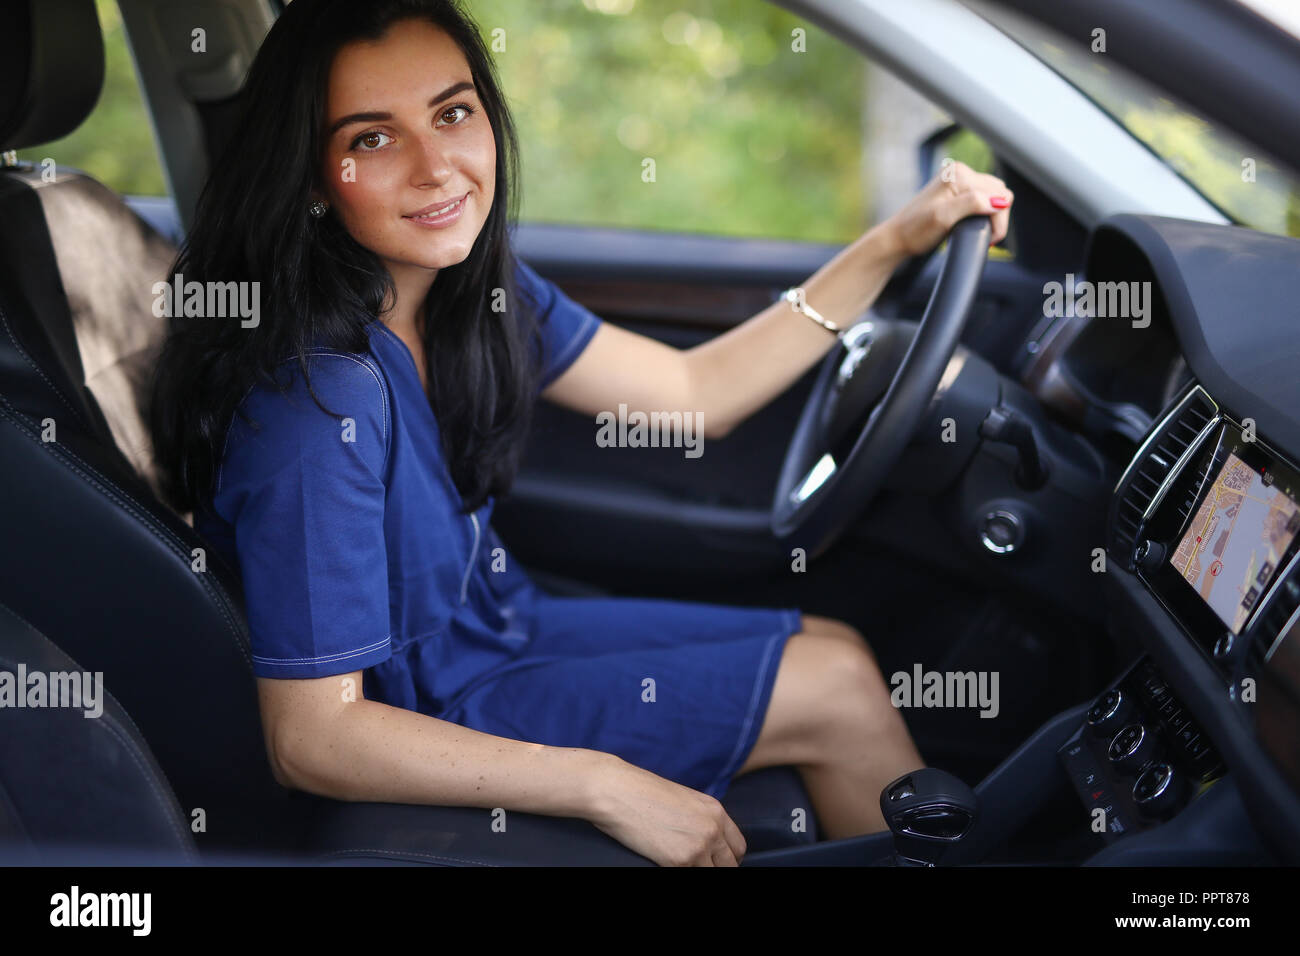 Die Frau auf dem Beifahrersitz durch das Lenkrad Stockfotografie